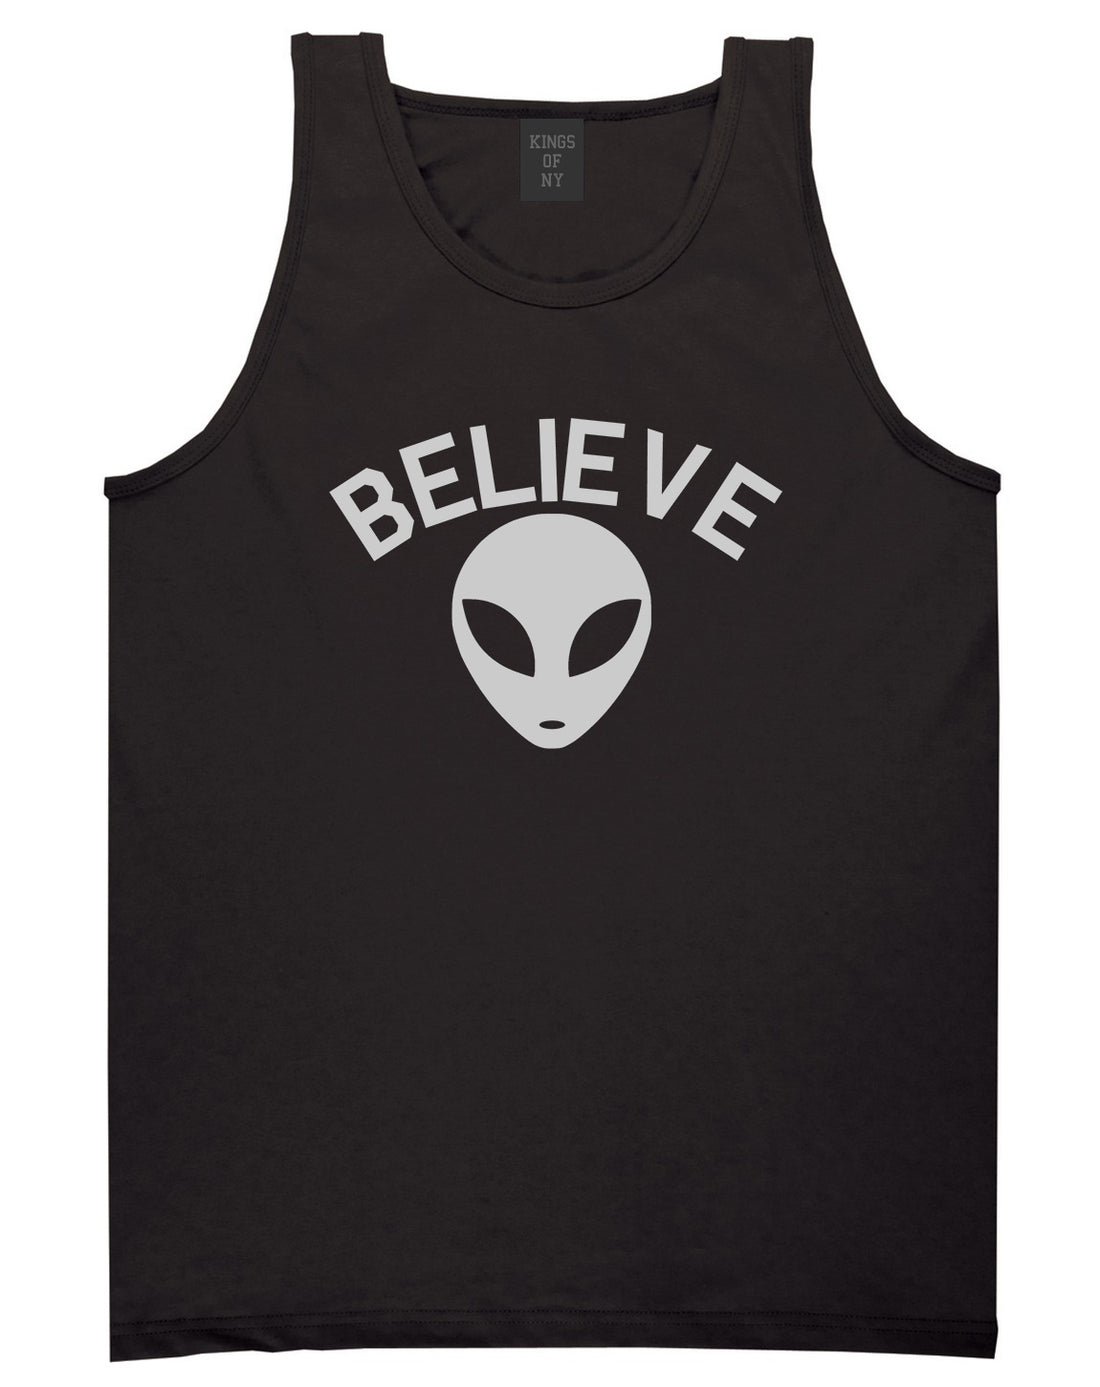 Believe Alien Black Tank Top Shirt by Kings Of NY